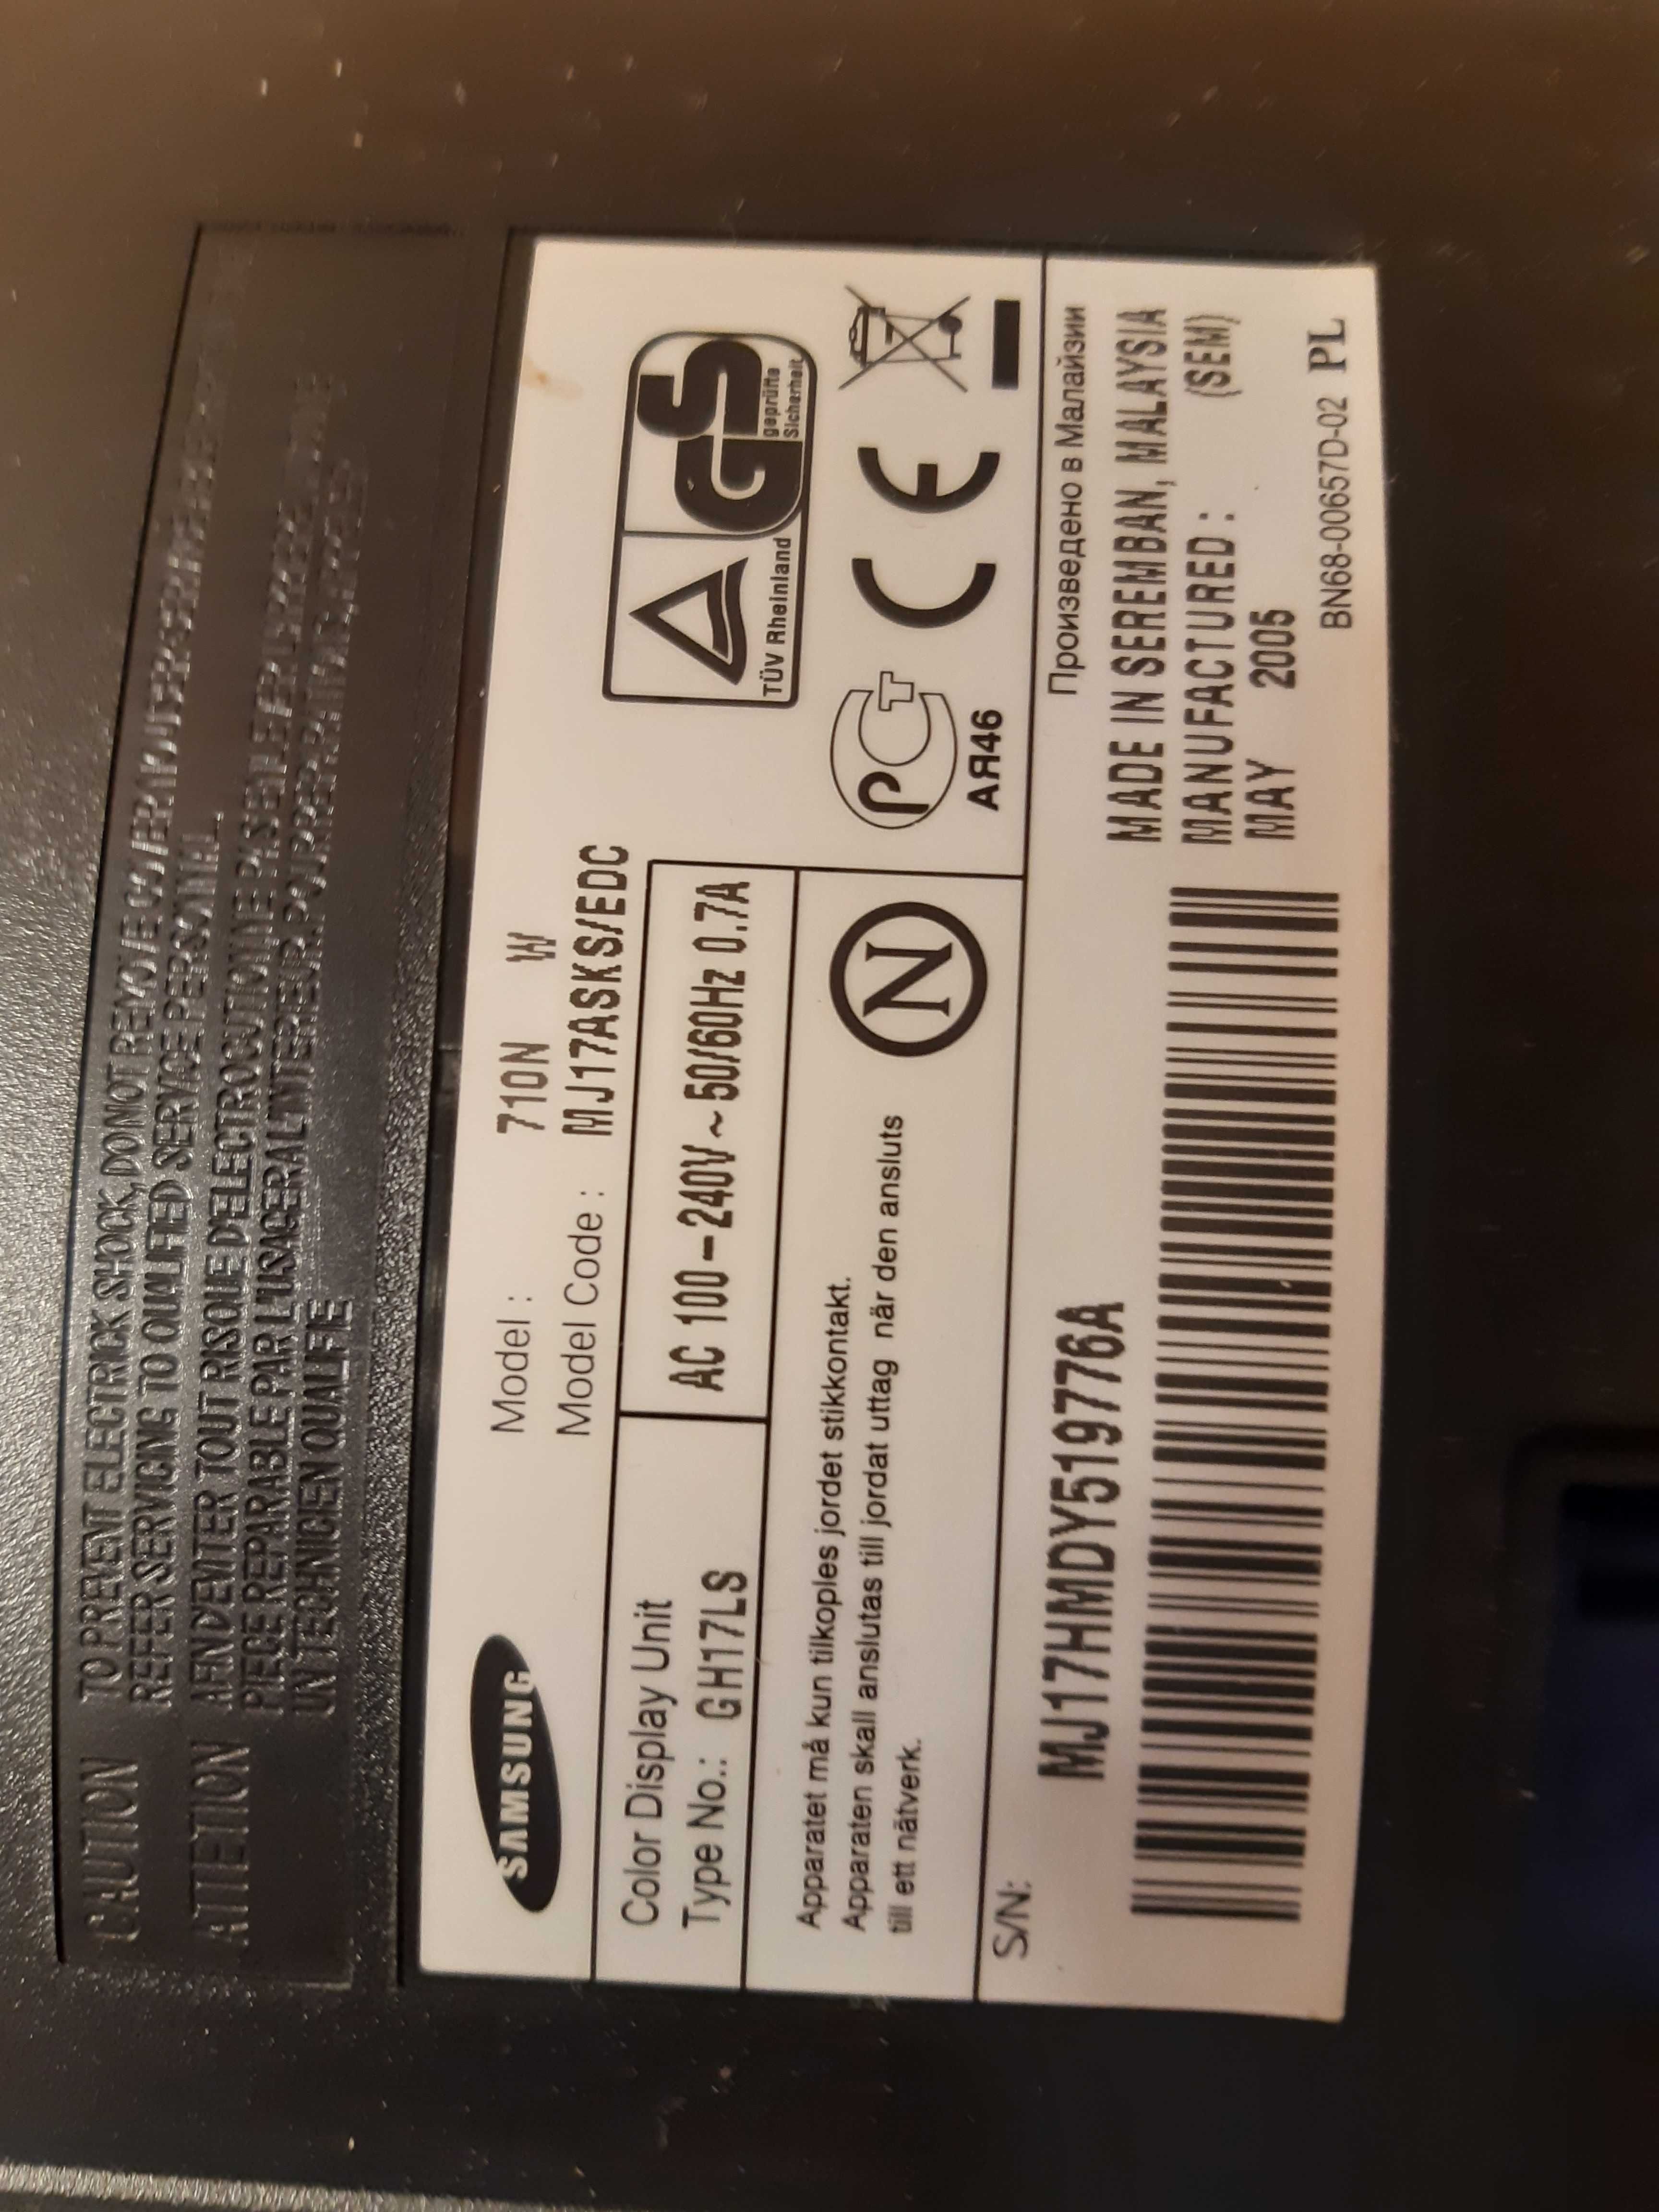 Monitor 17” Samsung 710N  SyncMaster Stan b. dobry   TANIO  !!